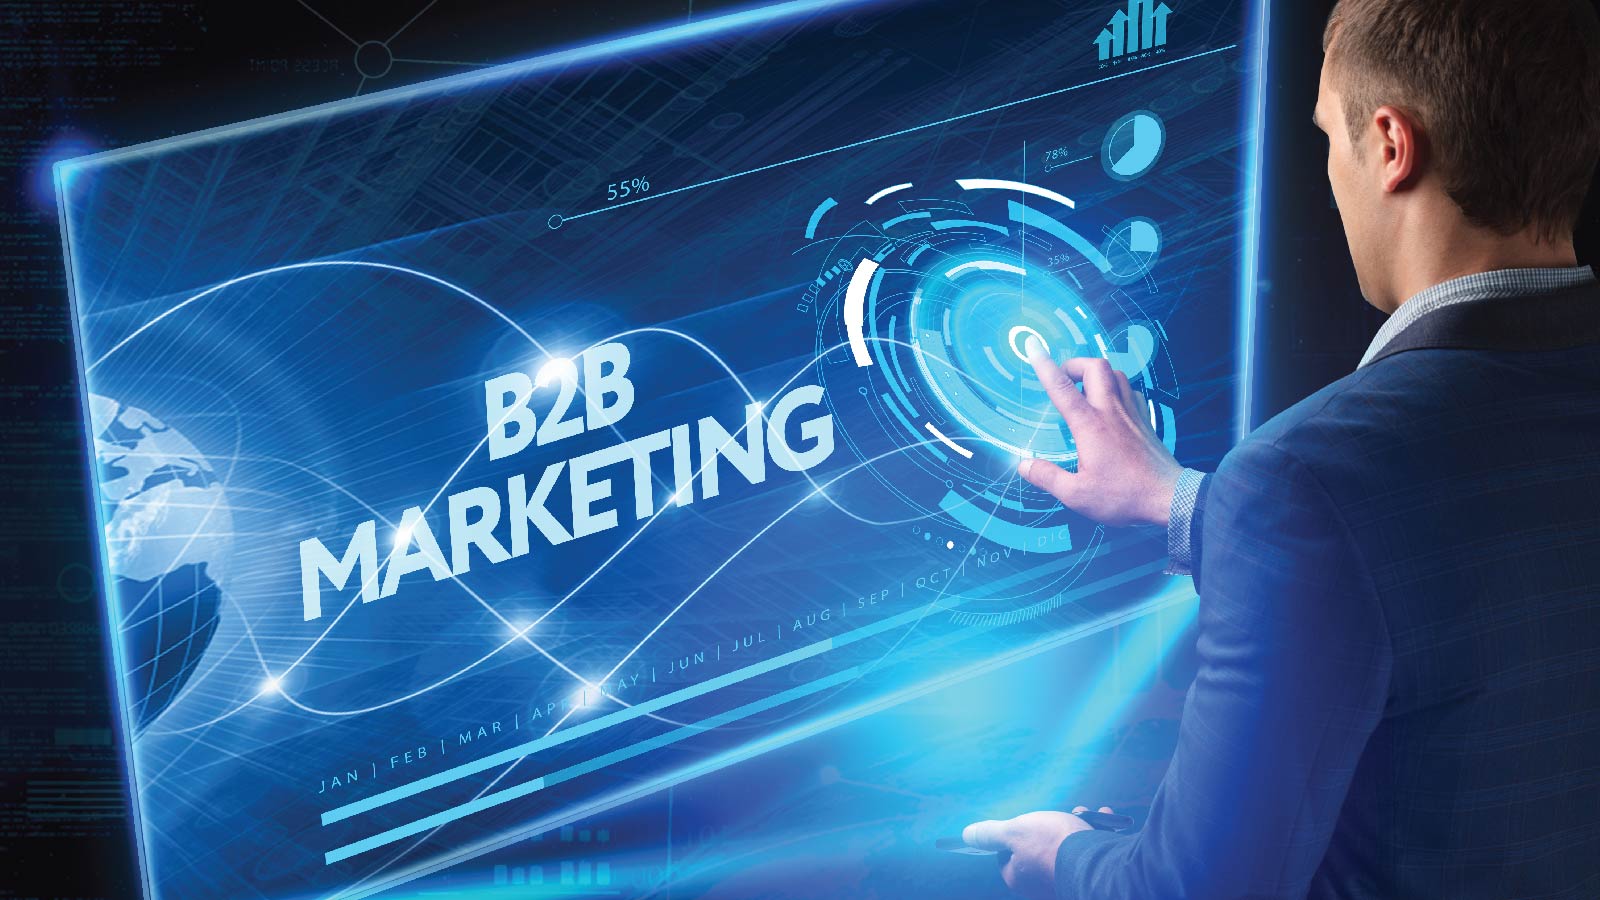 B2B Marketing Campaigns